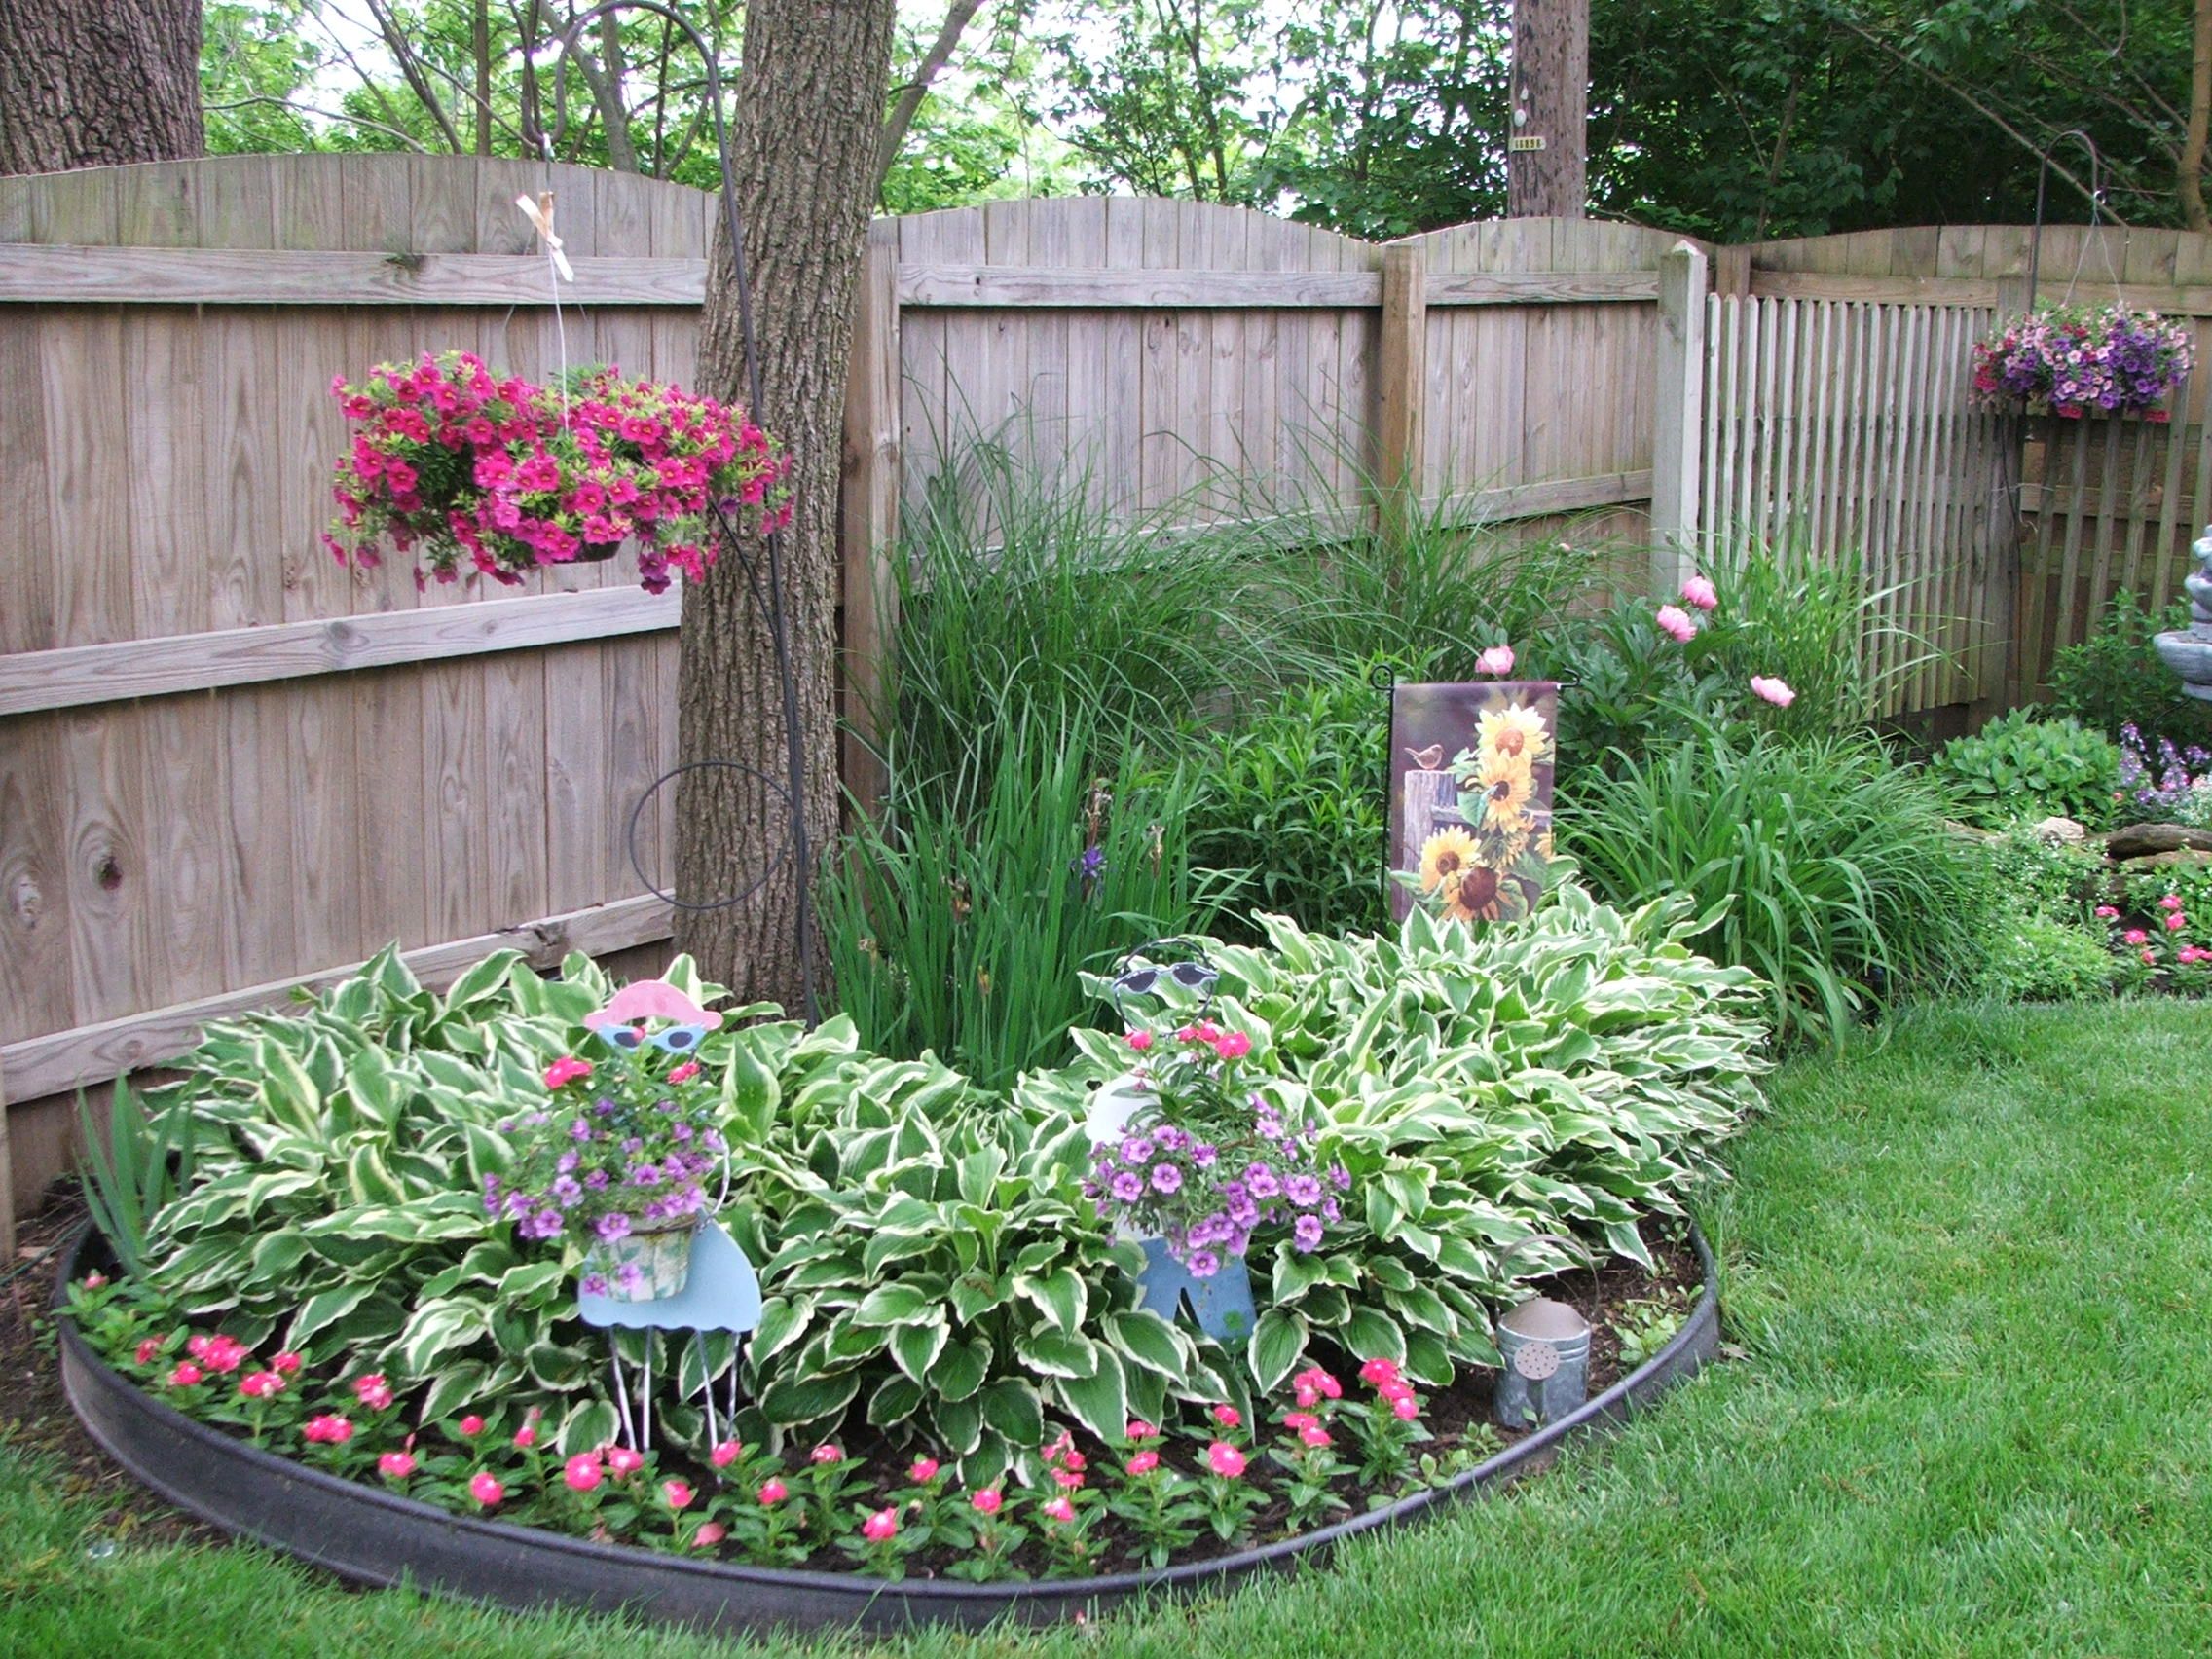 Клумба из многолетников – схемы клумб непрерывного цветения в саду и на даче + фото